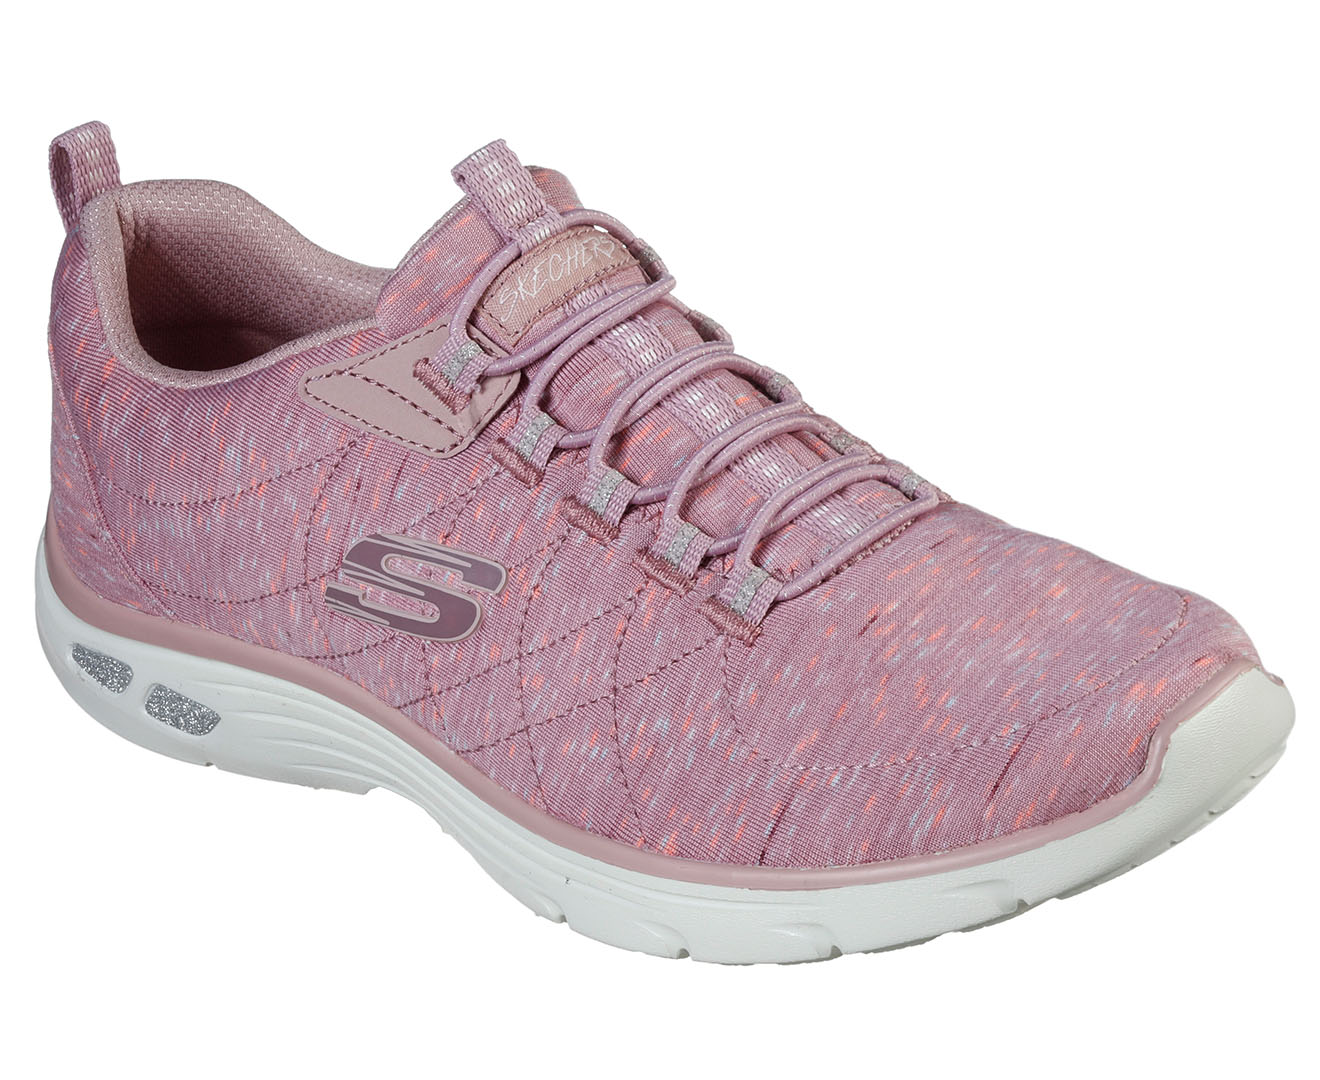 Skechers Women's Empire D'Lux Sports Shoes - Sparkling Pops Shoe - Rose ...